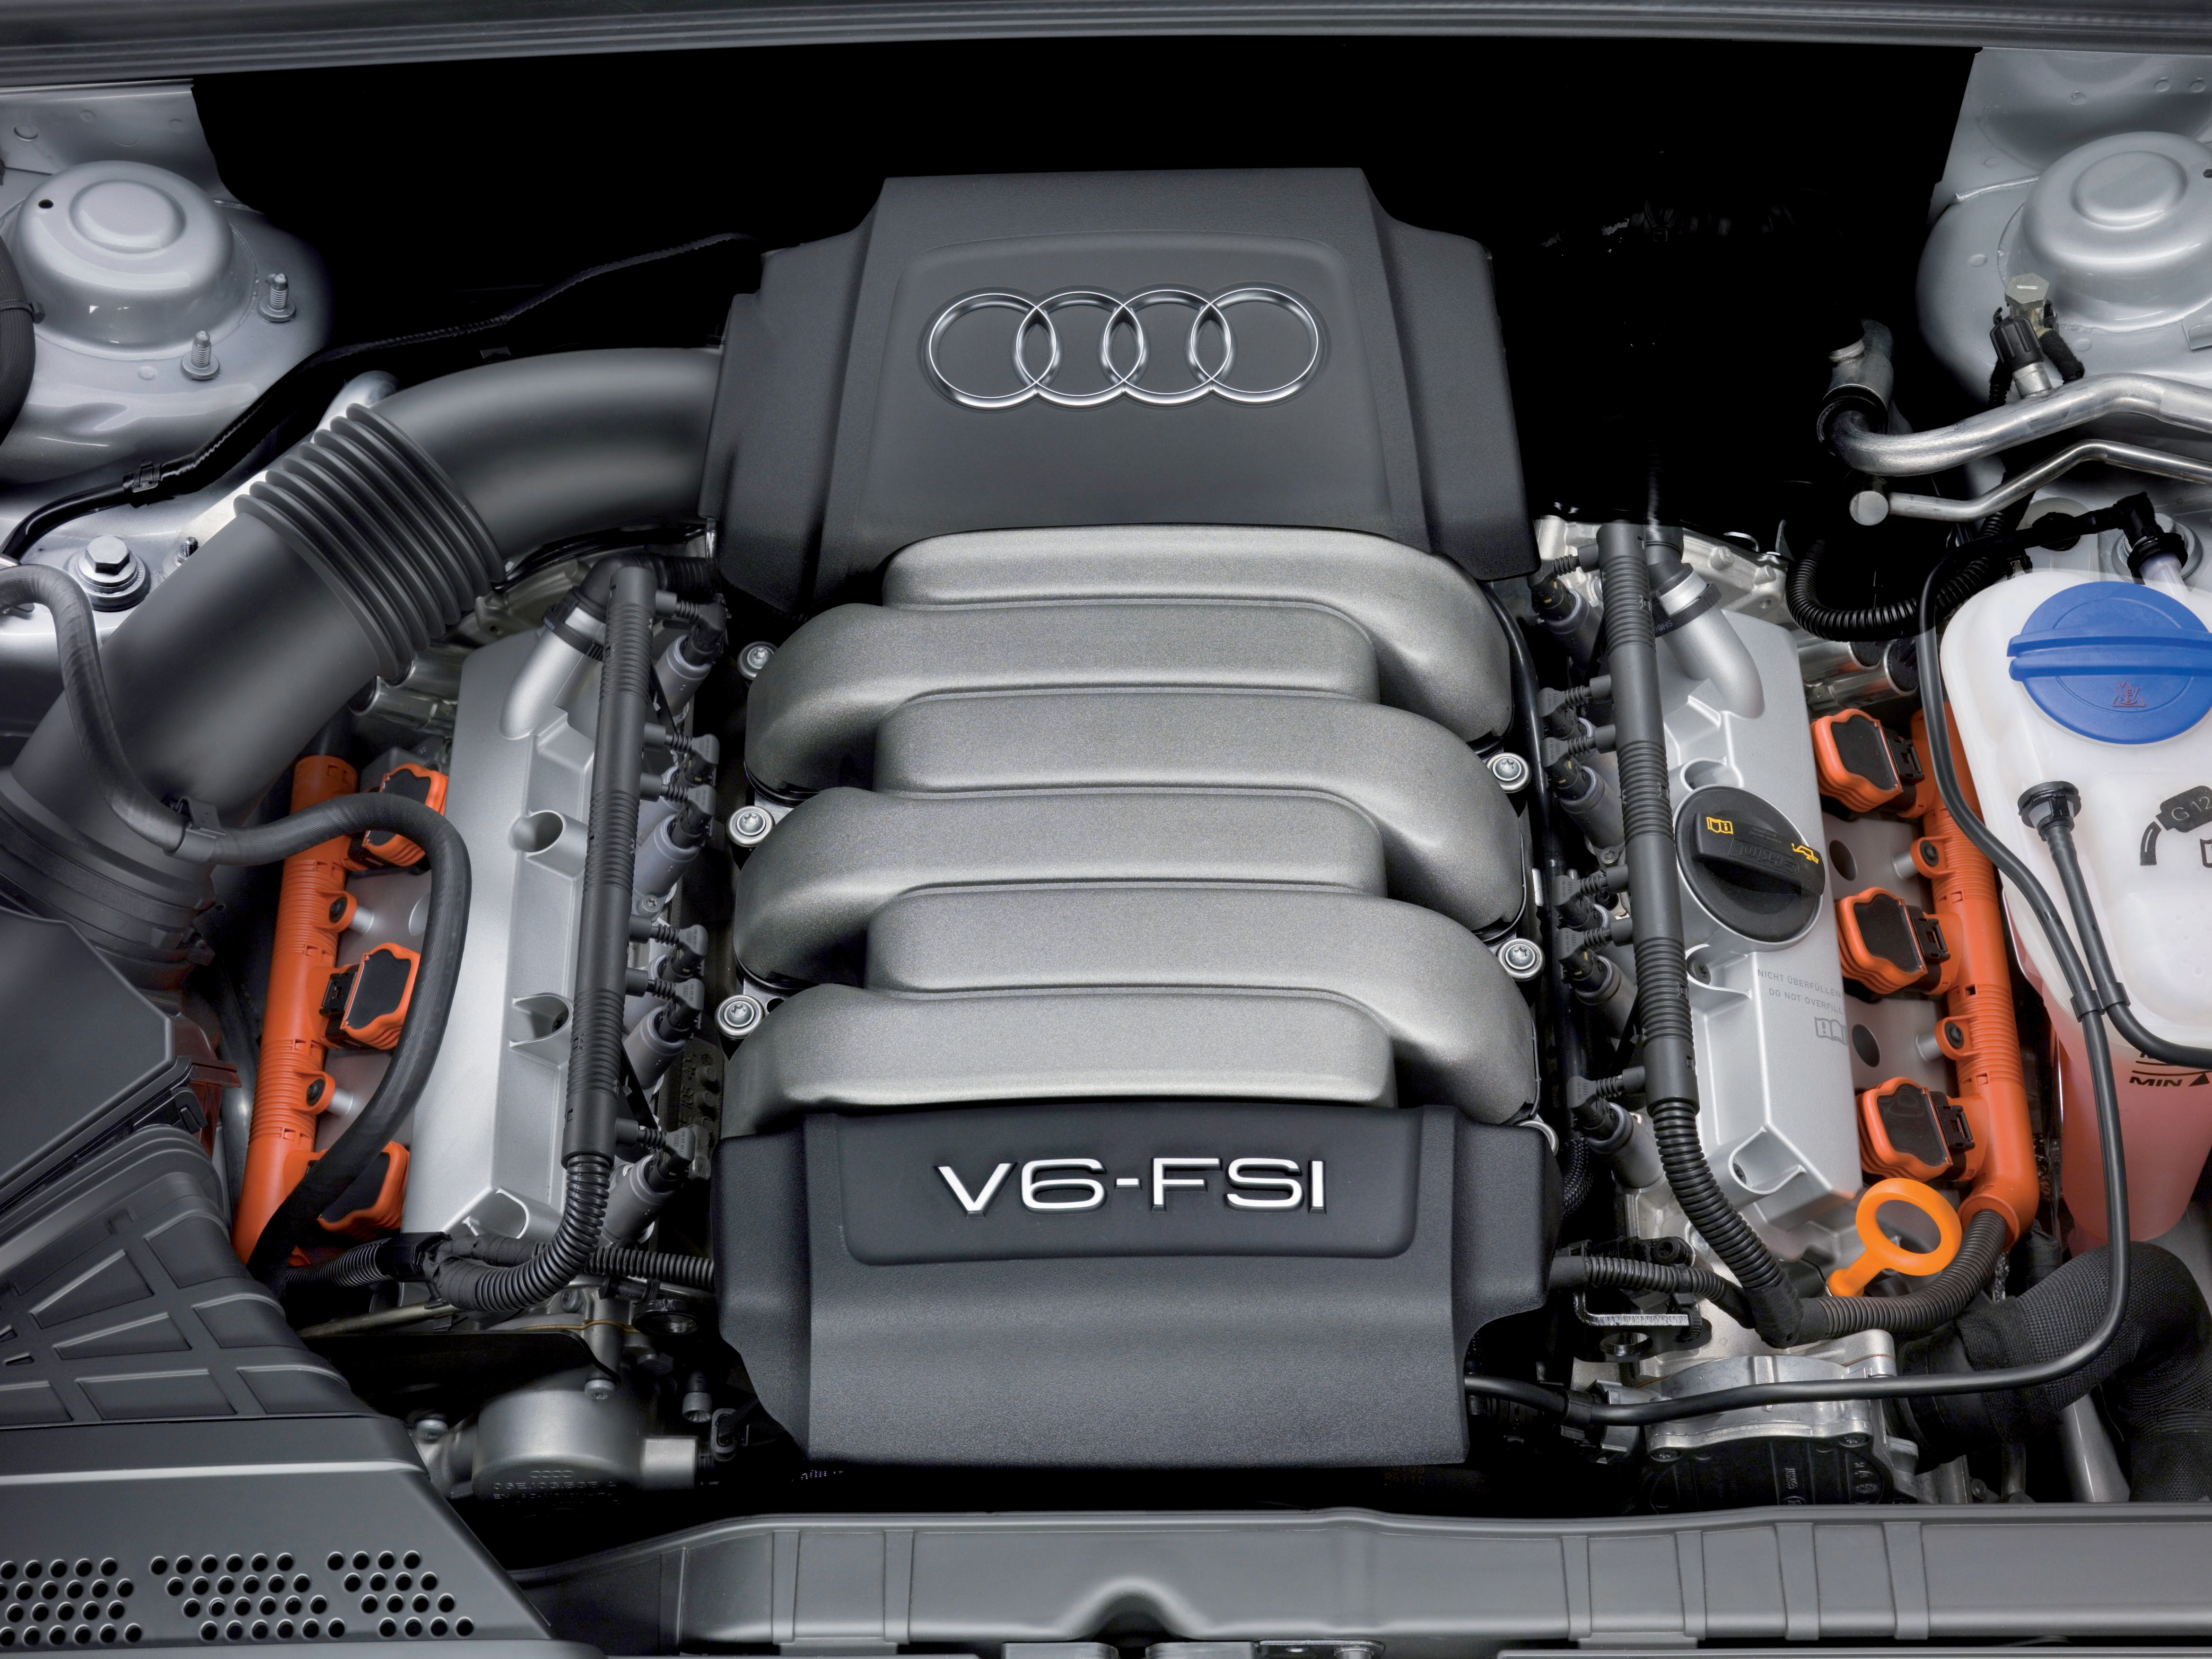 cars, engines, Audi - desktop wallpaper